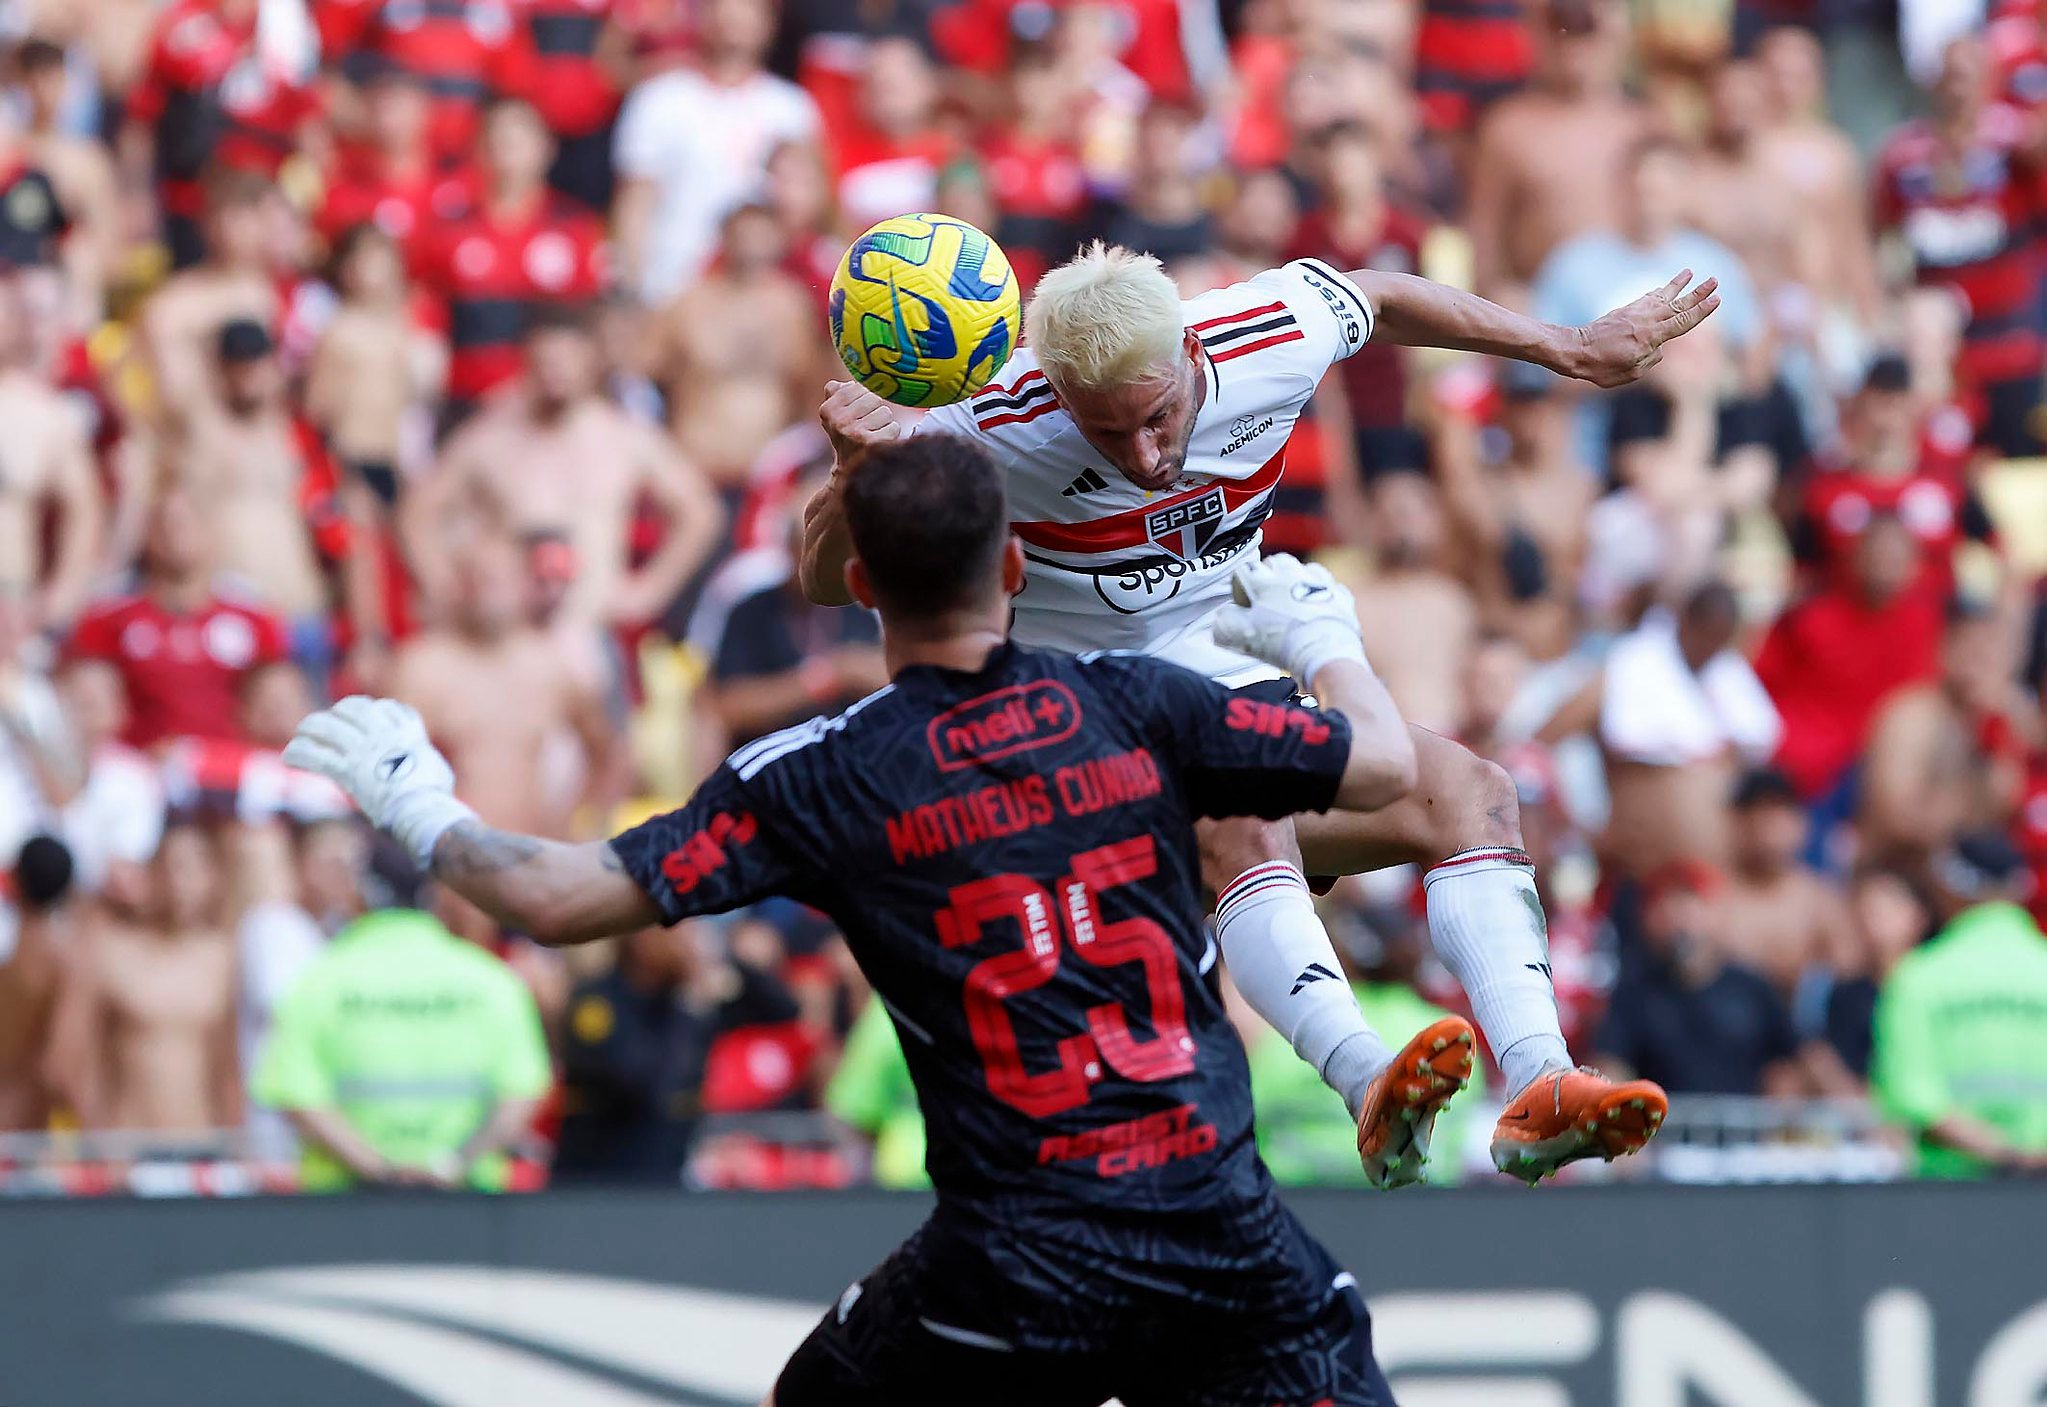 Final da Copa do Brasil: São Paulo decide em casa contra o Flamengo, copa  do brasil